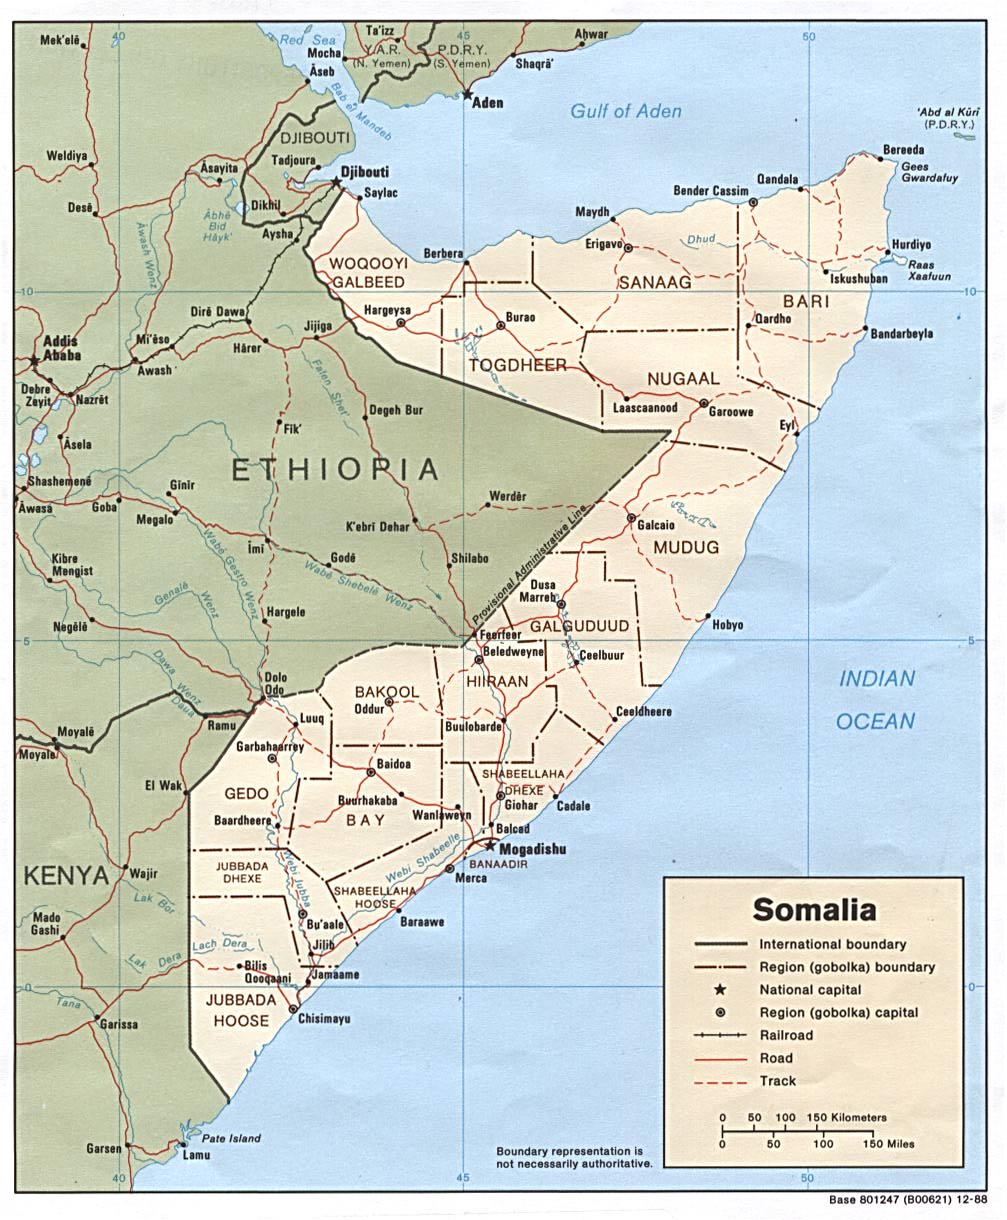 Detailed Map of Somalia